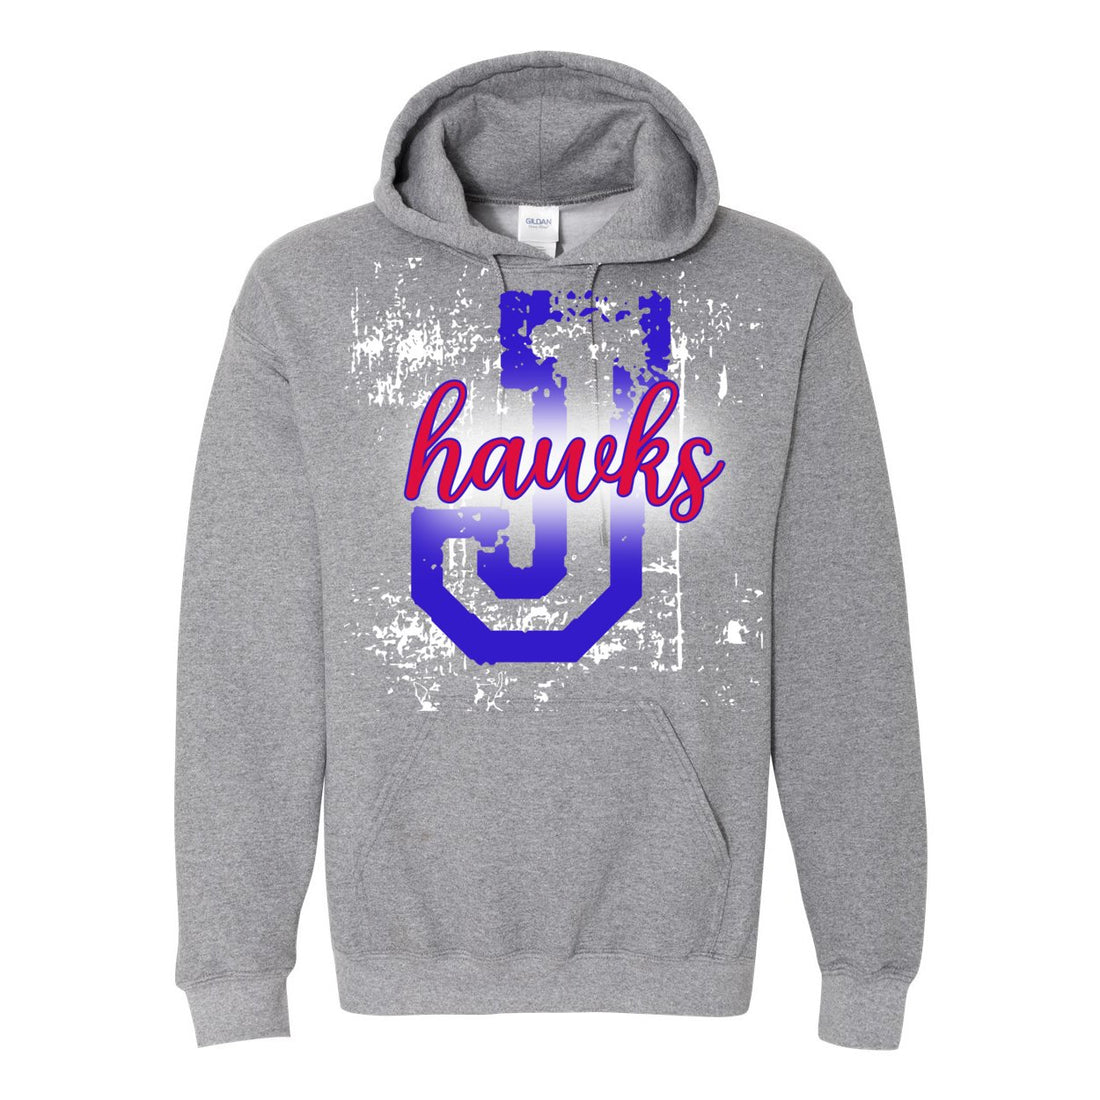 J-Hawks Sport Hooded Sweatshirt - Sweaters/Hoodies - Positively Sassy - J-Hawks Sport Hooded Sweatshirt